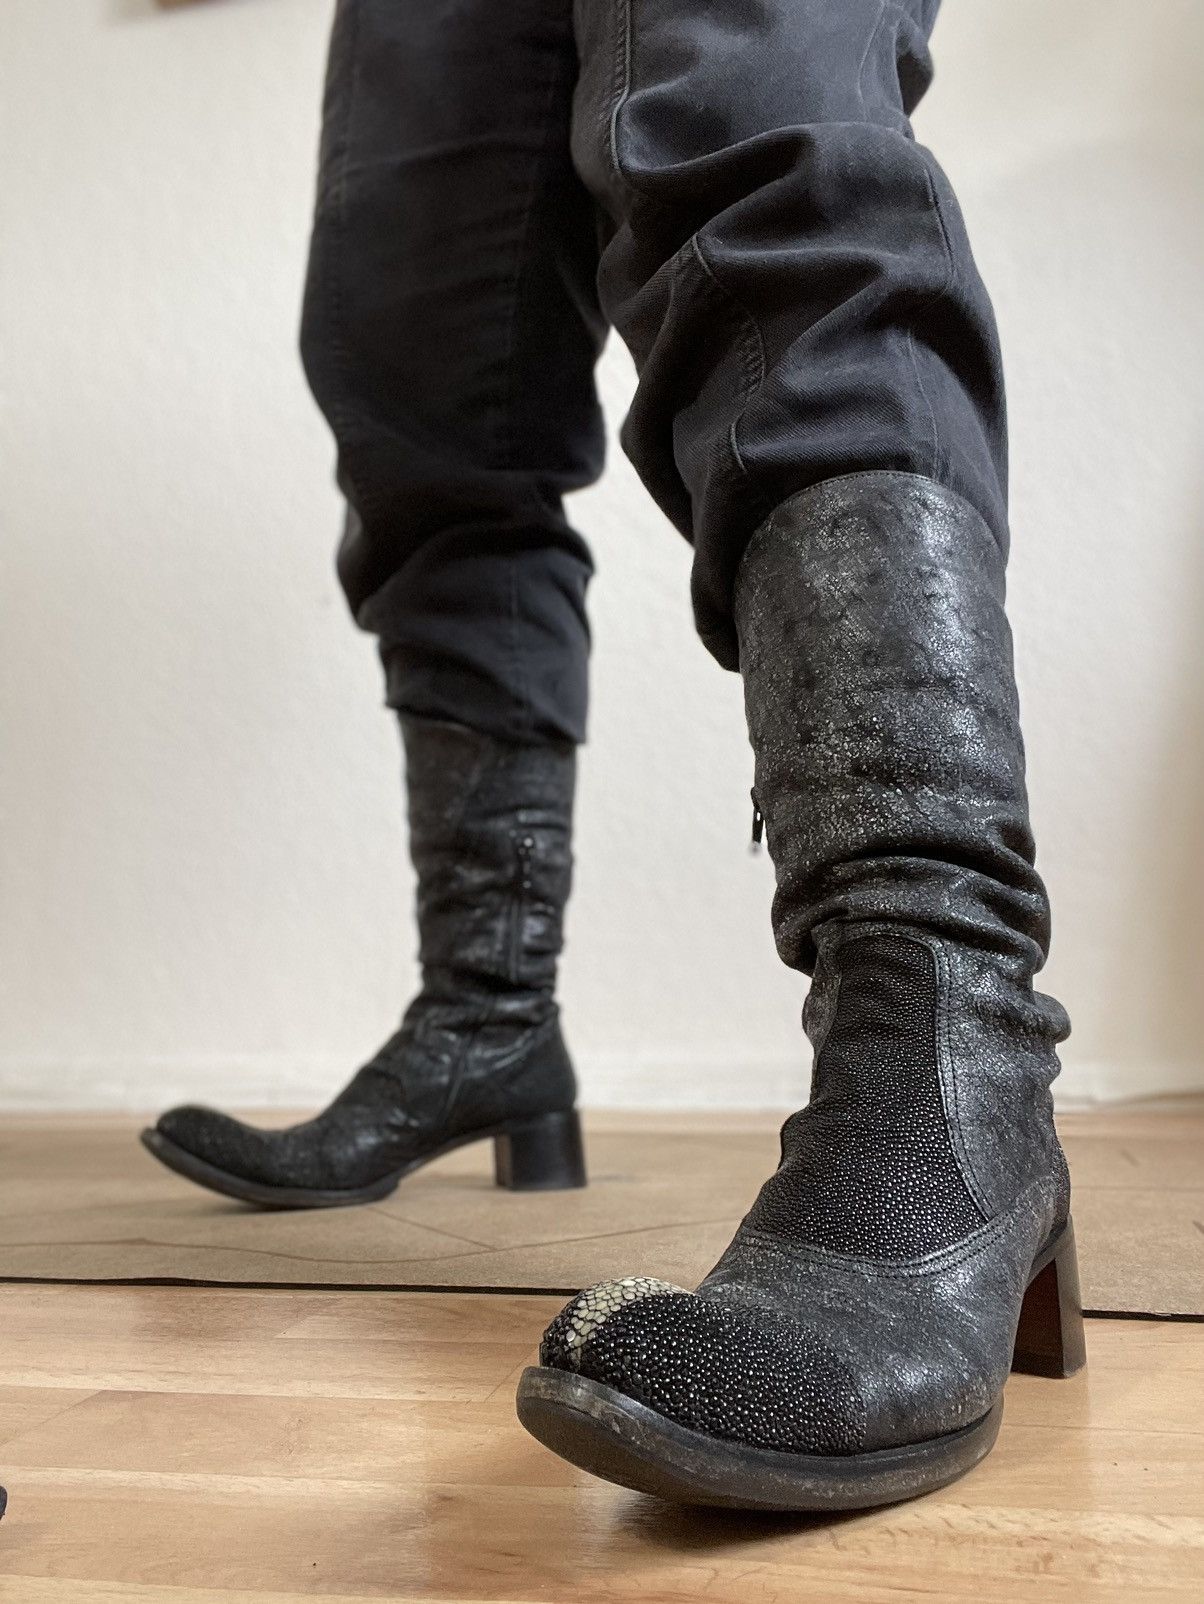 Gianni Barbato Vintage Gianni Barbato cowboy western Boots genuine leather Size US 6 / IT 36 - 8 Thumbnail